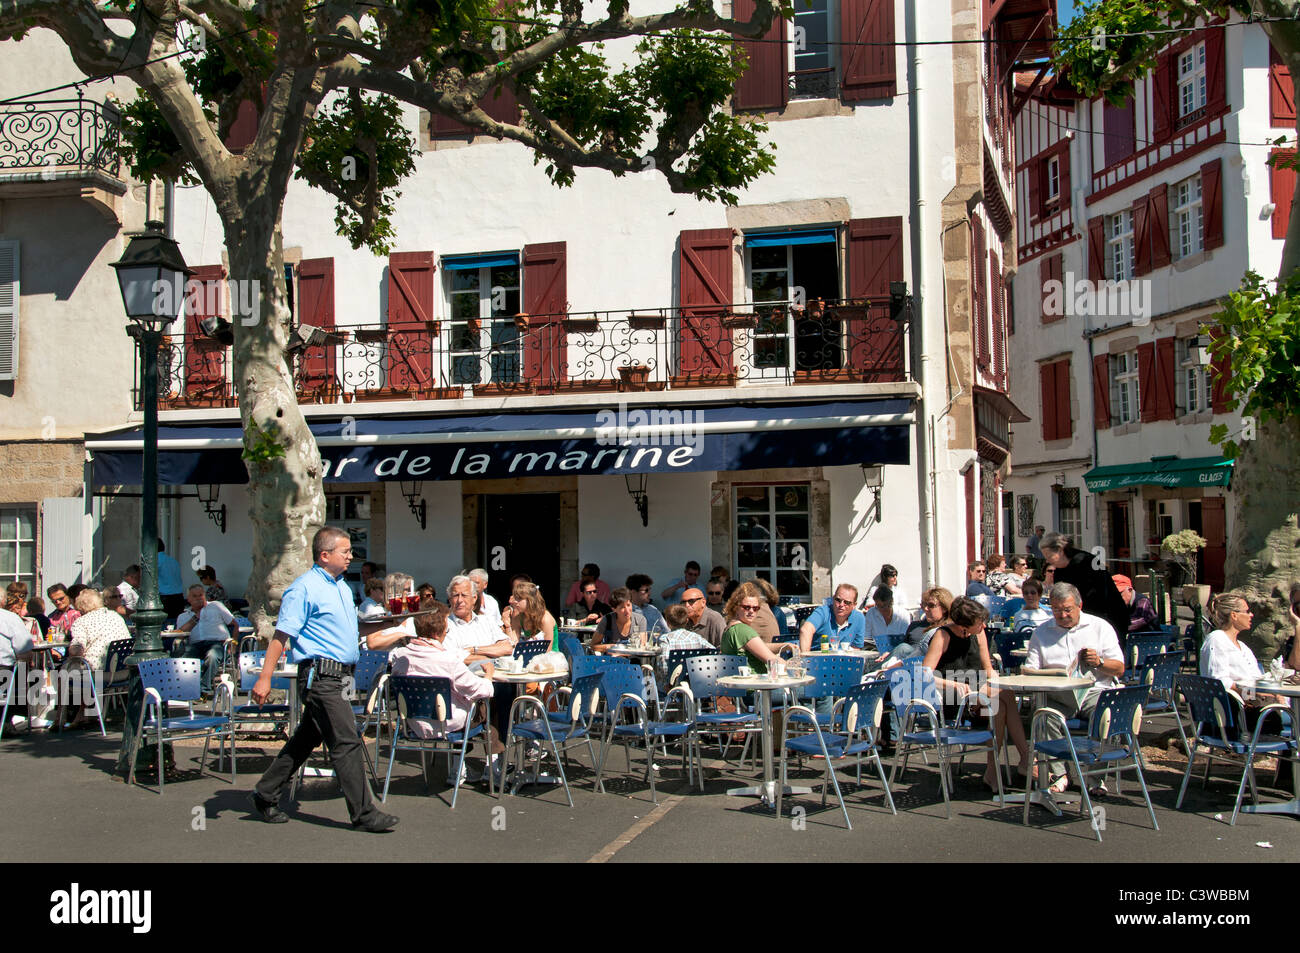 Place Loui XIV France St Jean de Luz Restaurant Bar Pub Pavement a typical fishing village Stock Photo